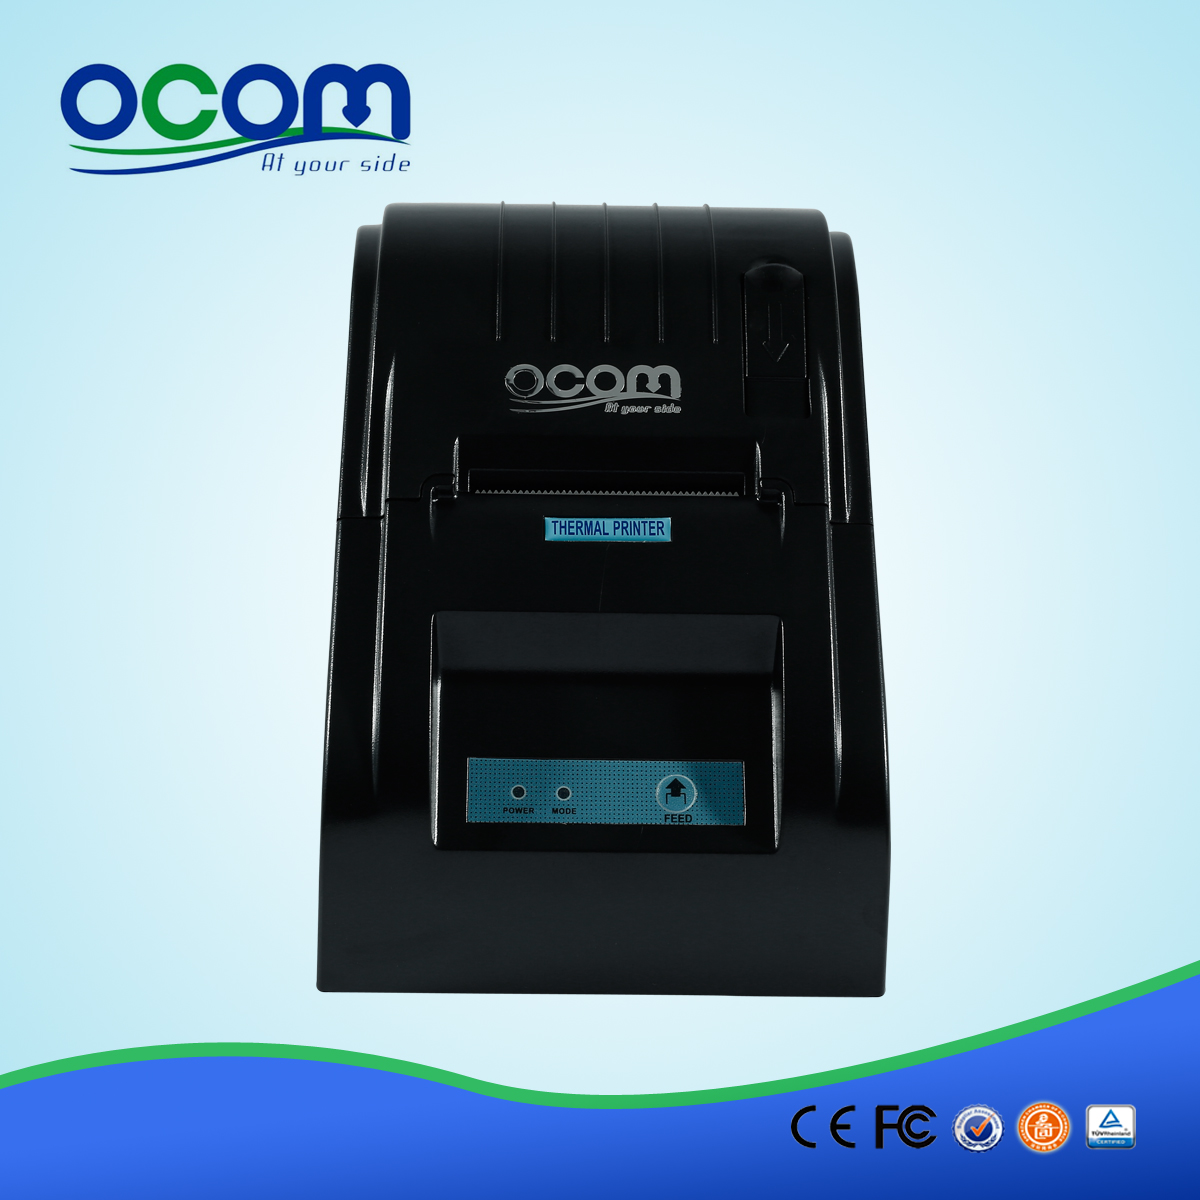 rp58 stampante OCPP-585 58 millimetri POS termica di alta qualità